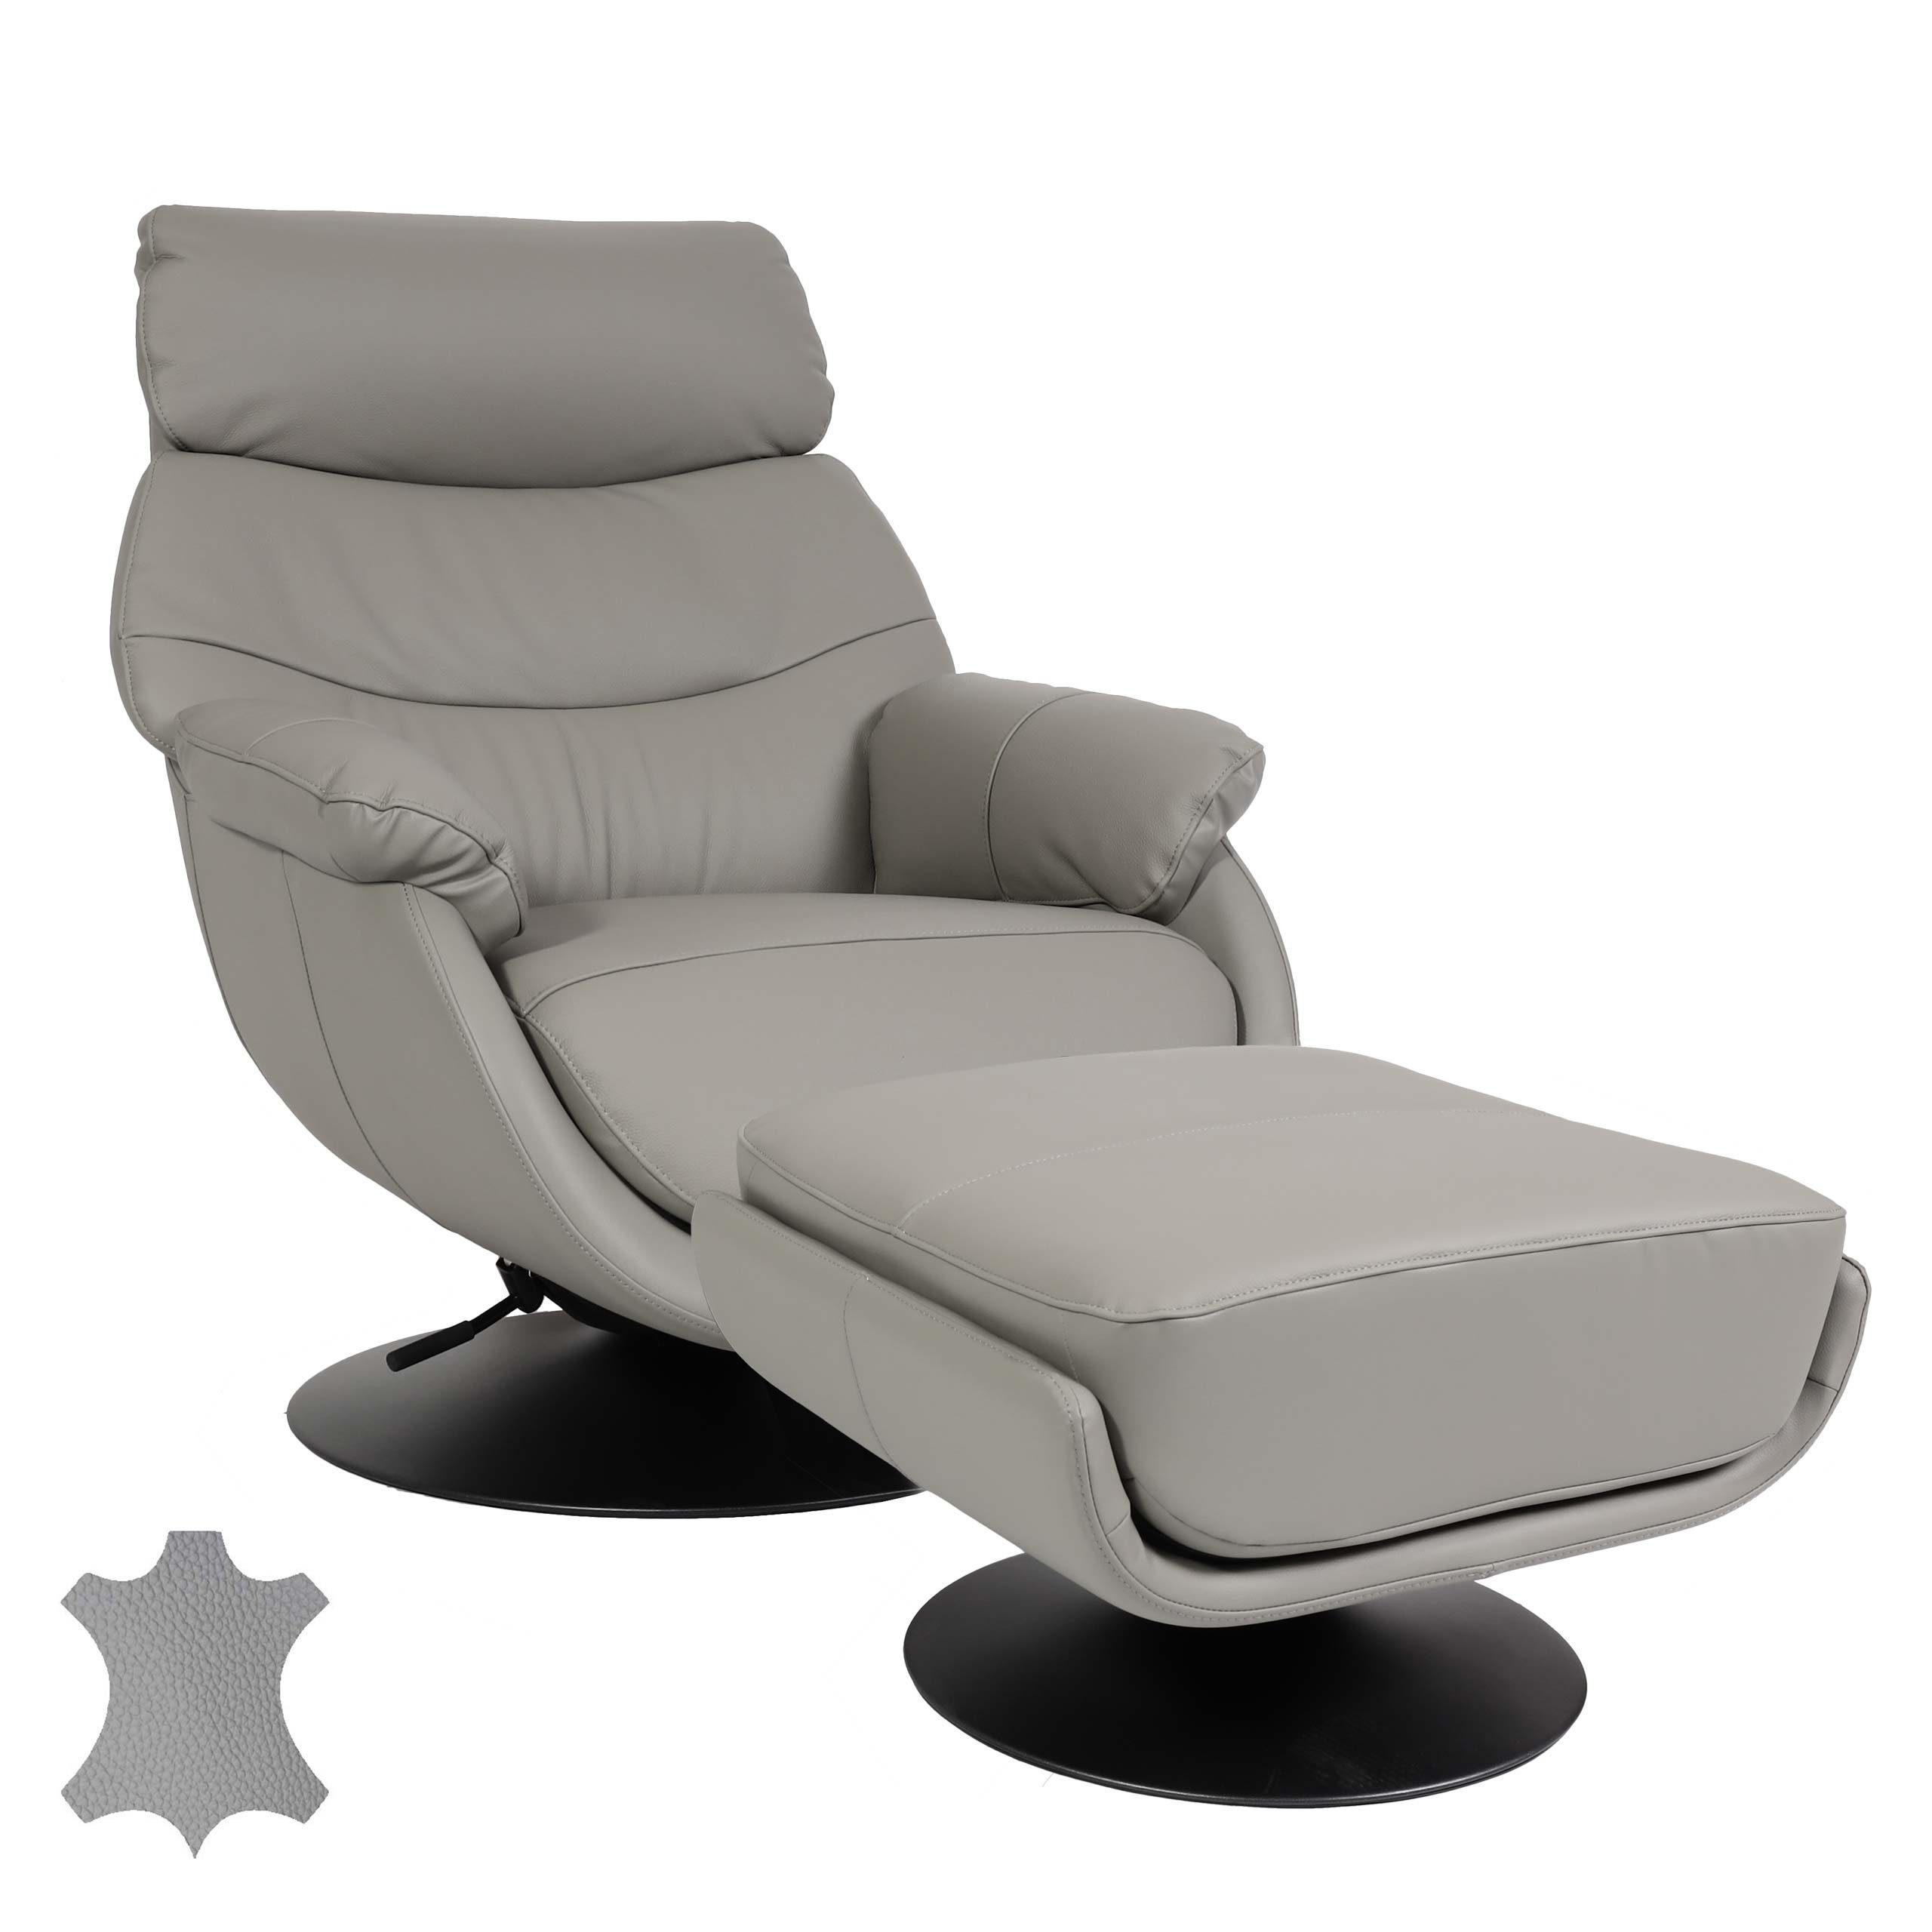 Feststellhebel, Breite grau Mit grau MCW Mit Relaxsessel Armlehnen Sitzfläche, | MCW-K99,